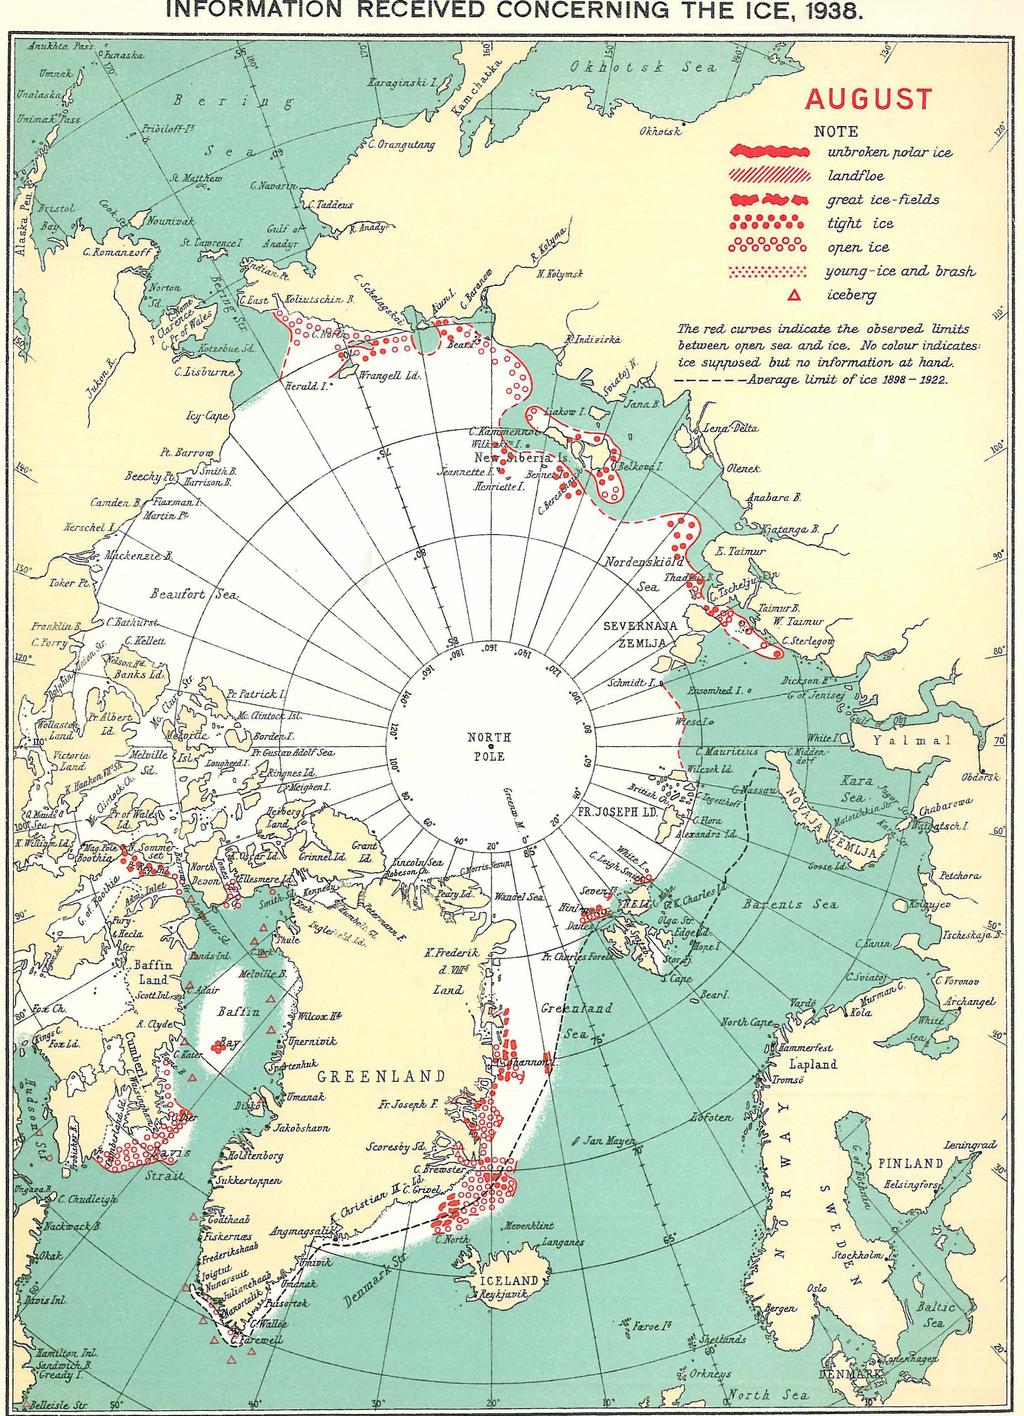 Kuva 5. Arktisen jään laajuus elokuussa 1938 Tanskan ilmatieteenlaitoksen mukaan. 1930-luvun lopulla merijäätä oli yhtä vähän kuin nykyisin. Lähde: http://www.pmel.noaa.